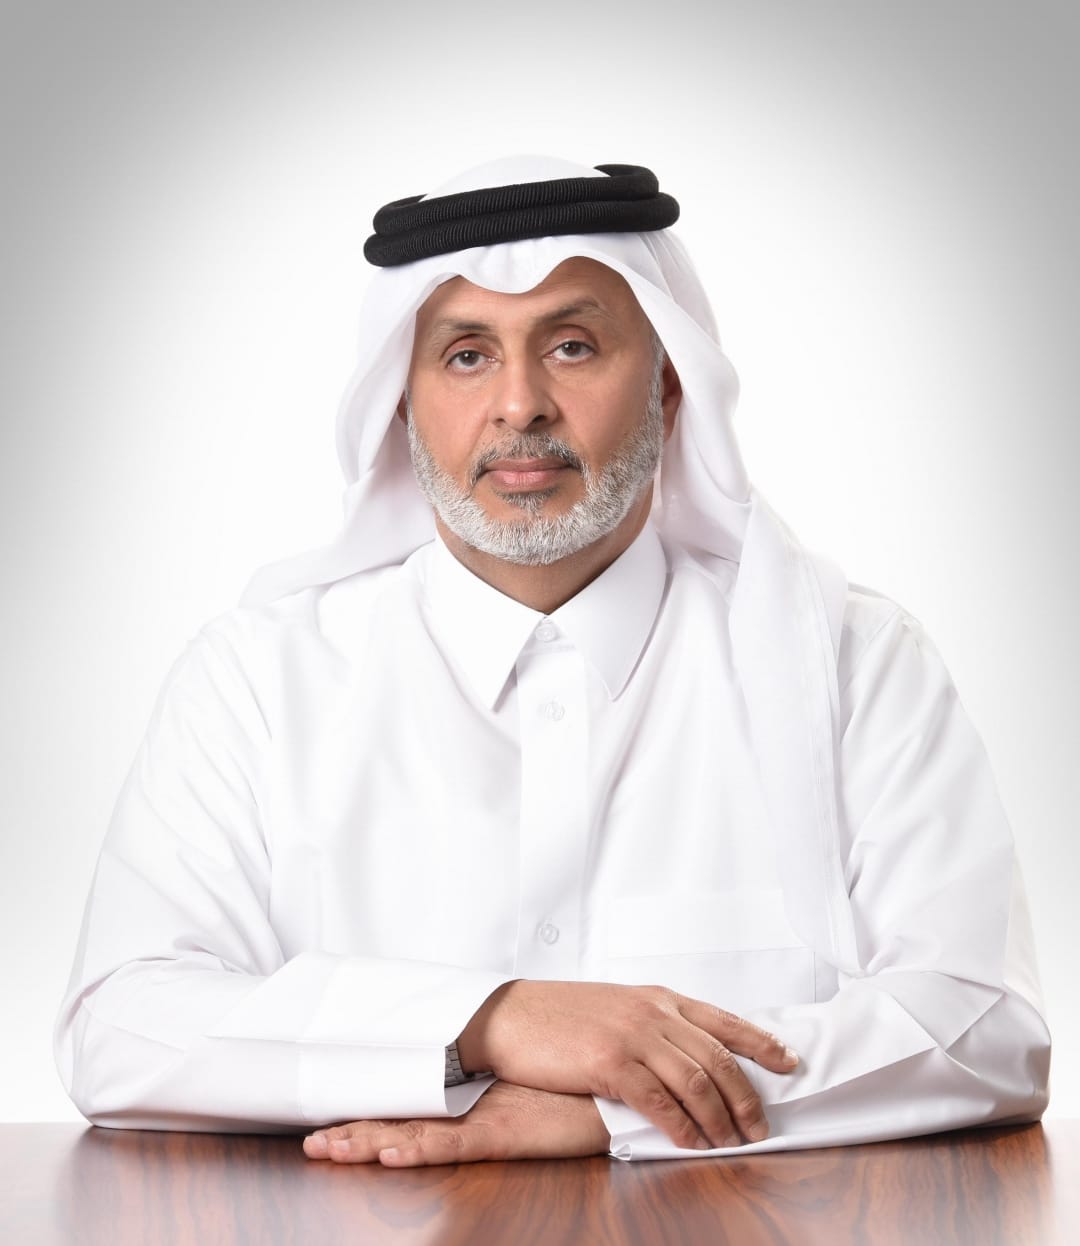 MR. Turki Mohamed Al-Khater